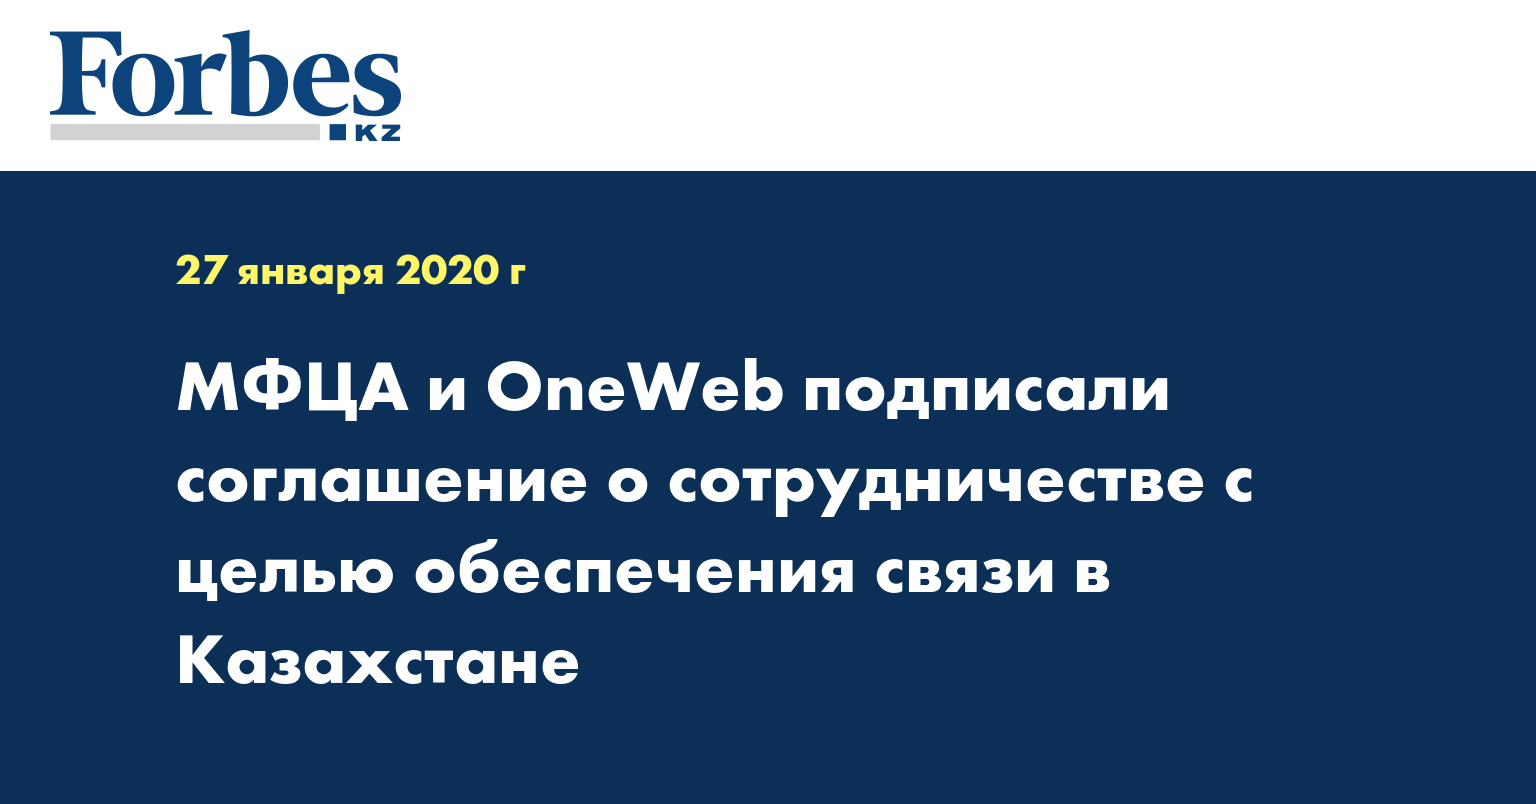 МФЦА и OneWeb подписали соглашение о сотрудничестве с целью обеспечения связи в Казахстане